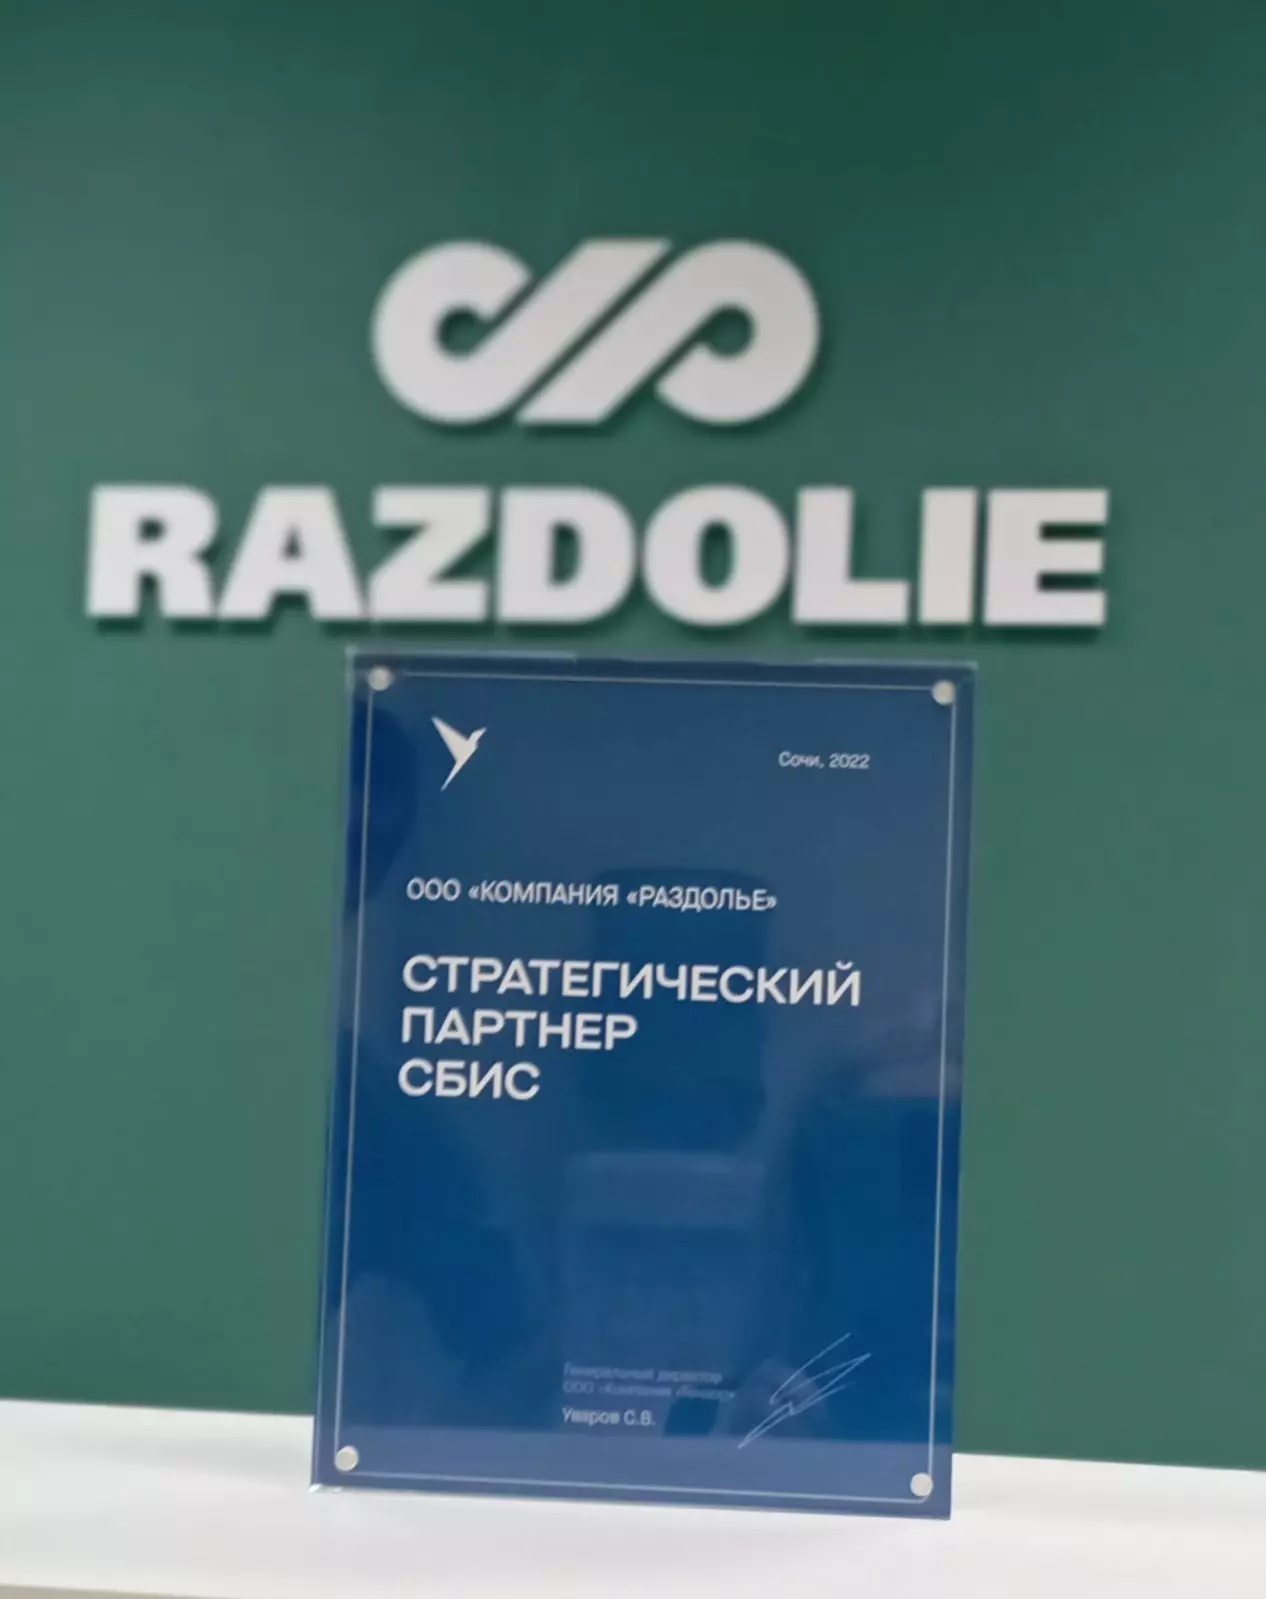 13 ноября 2022 года ГК "Раздолье" получила престижную награду "Стратегический партнер СБИС" 